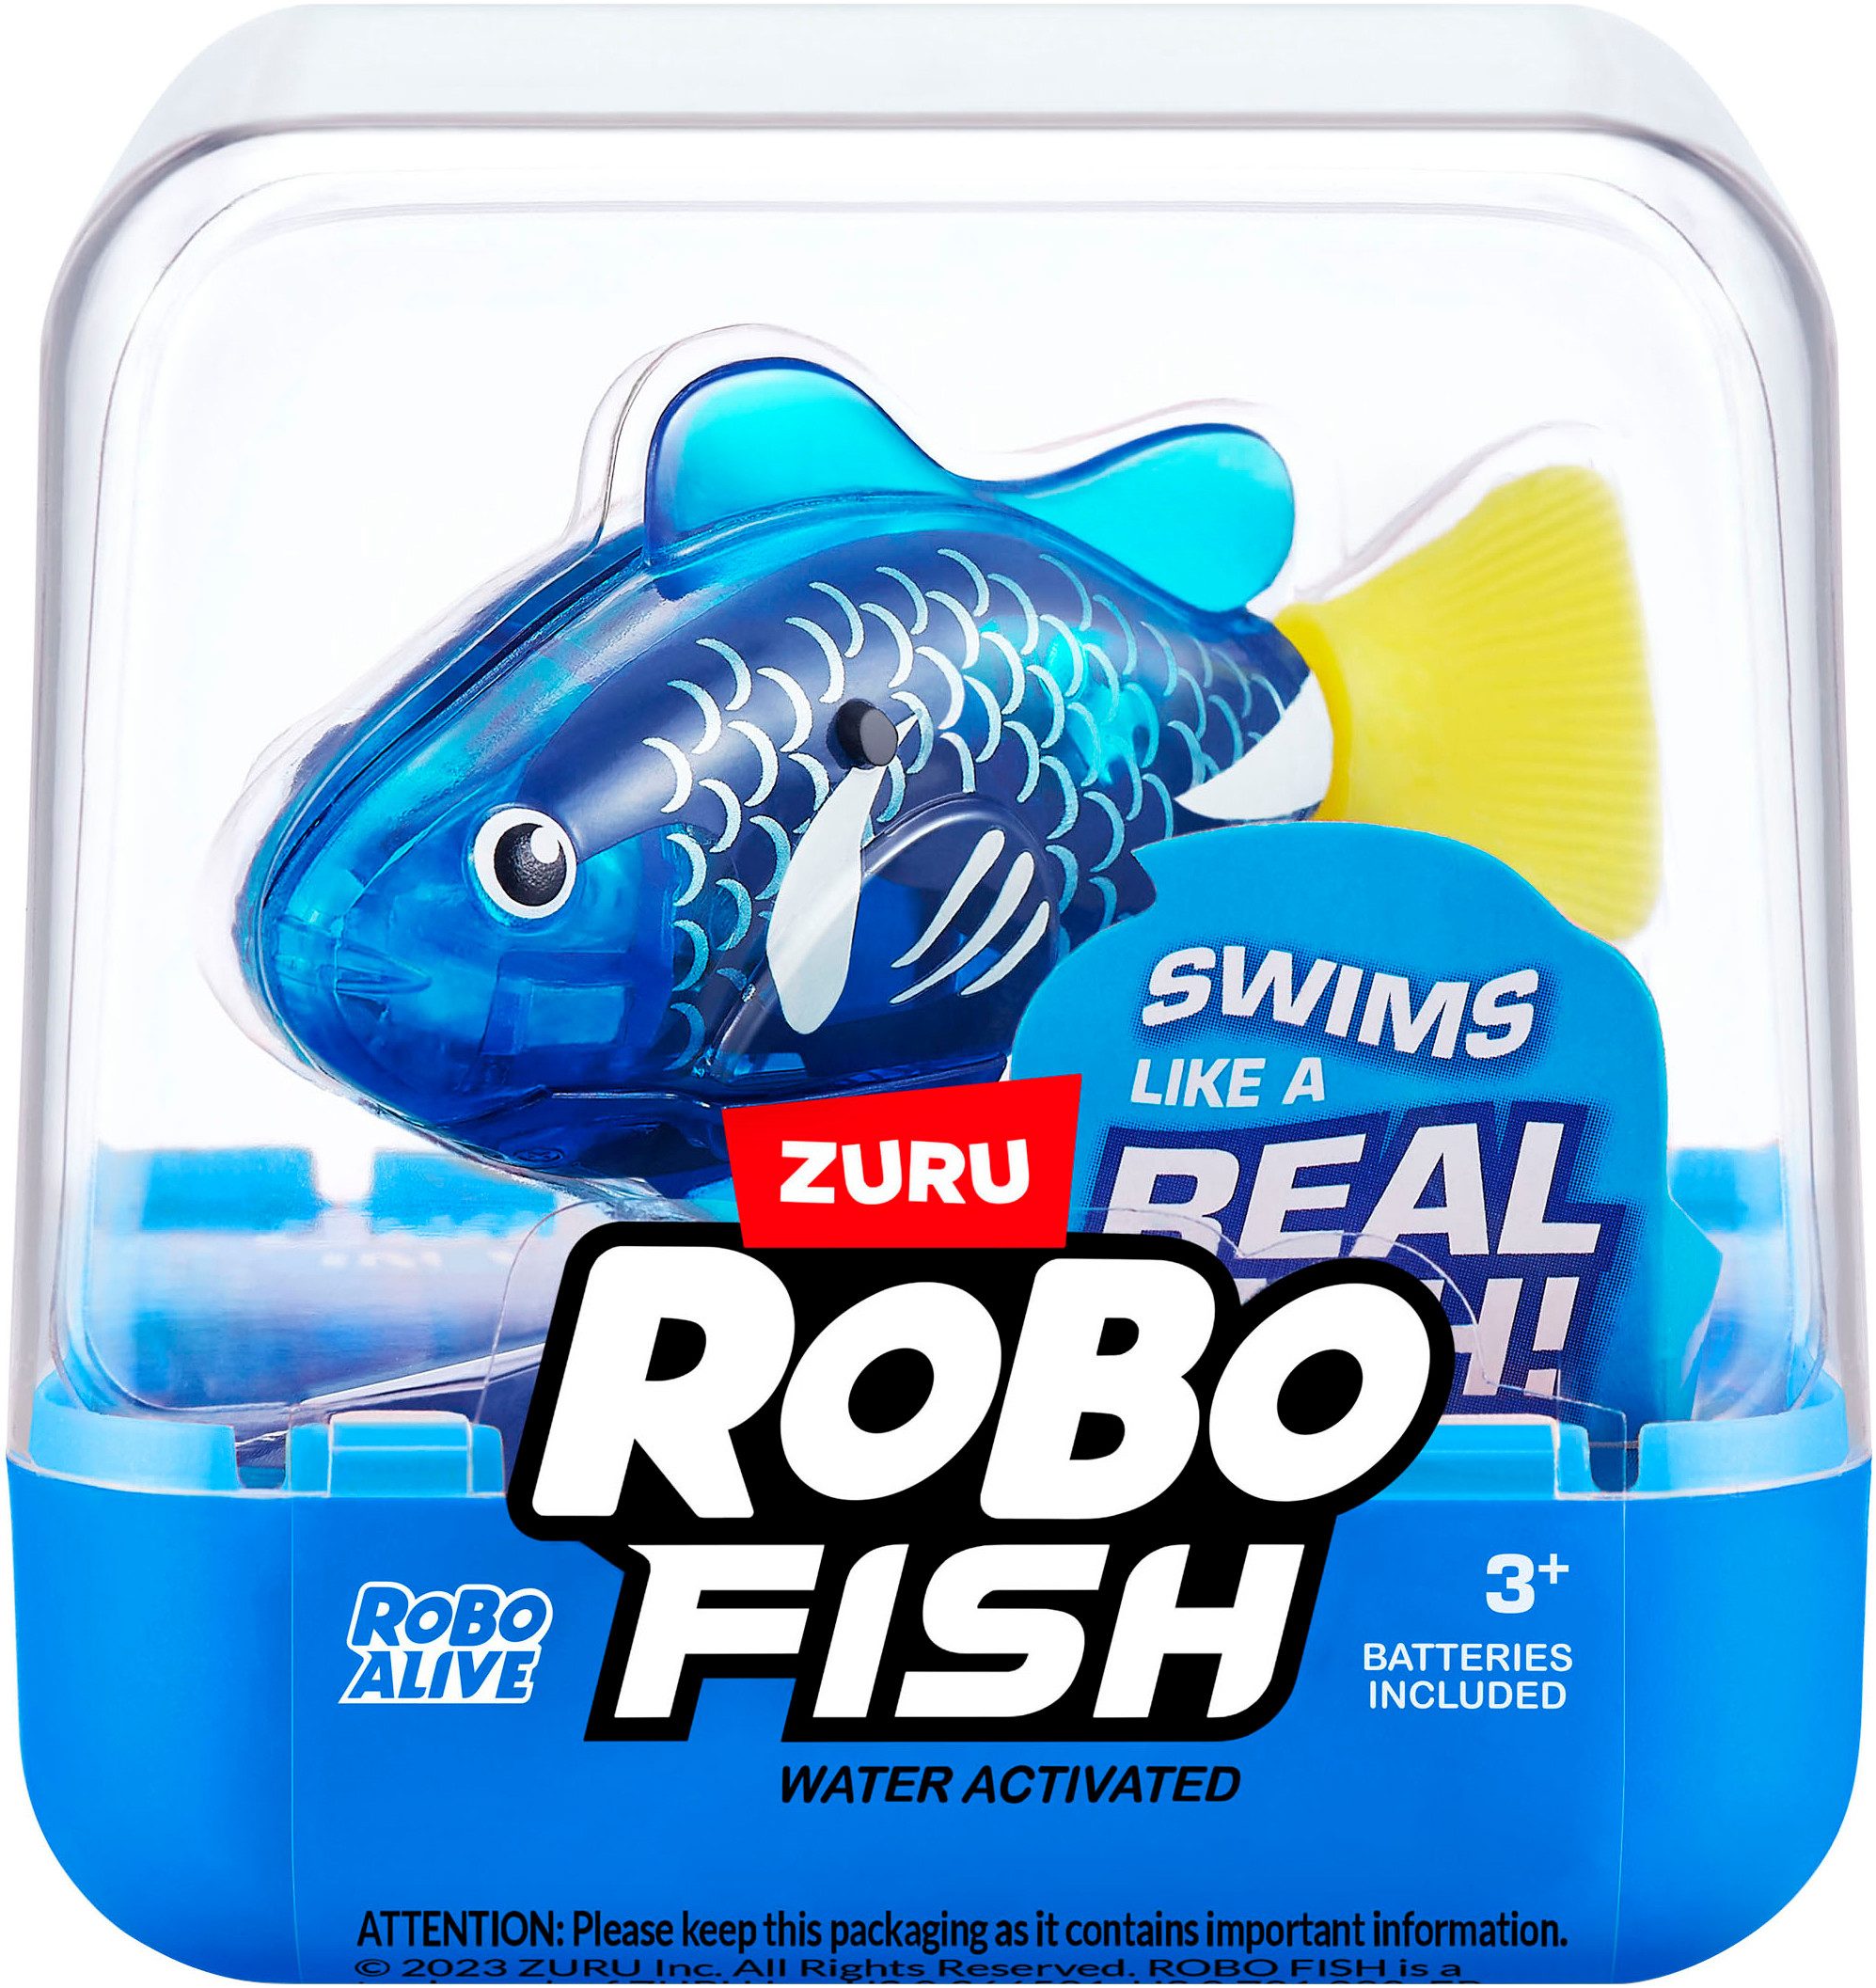 Robotertier Robo Alive, Robo-Fish Serie 3, mit Funktion; Lieferung erfolgt farblich sortiert